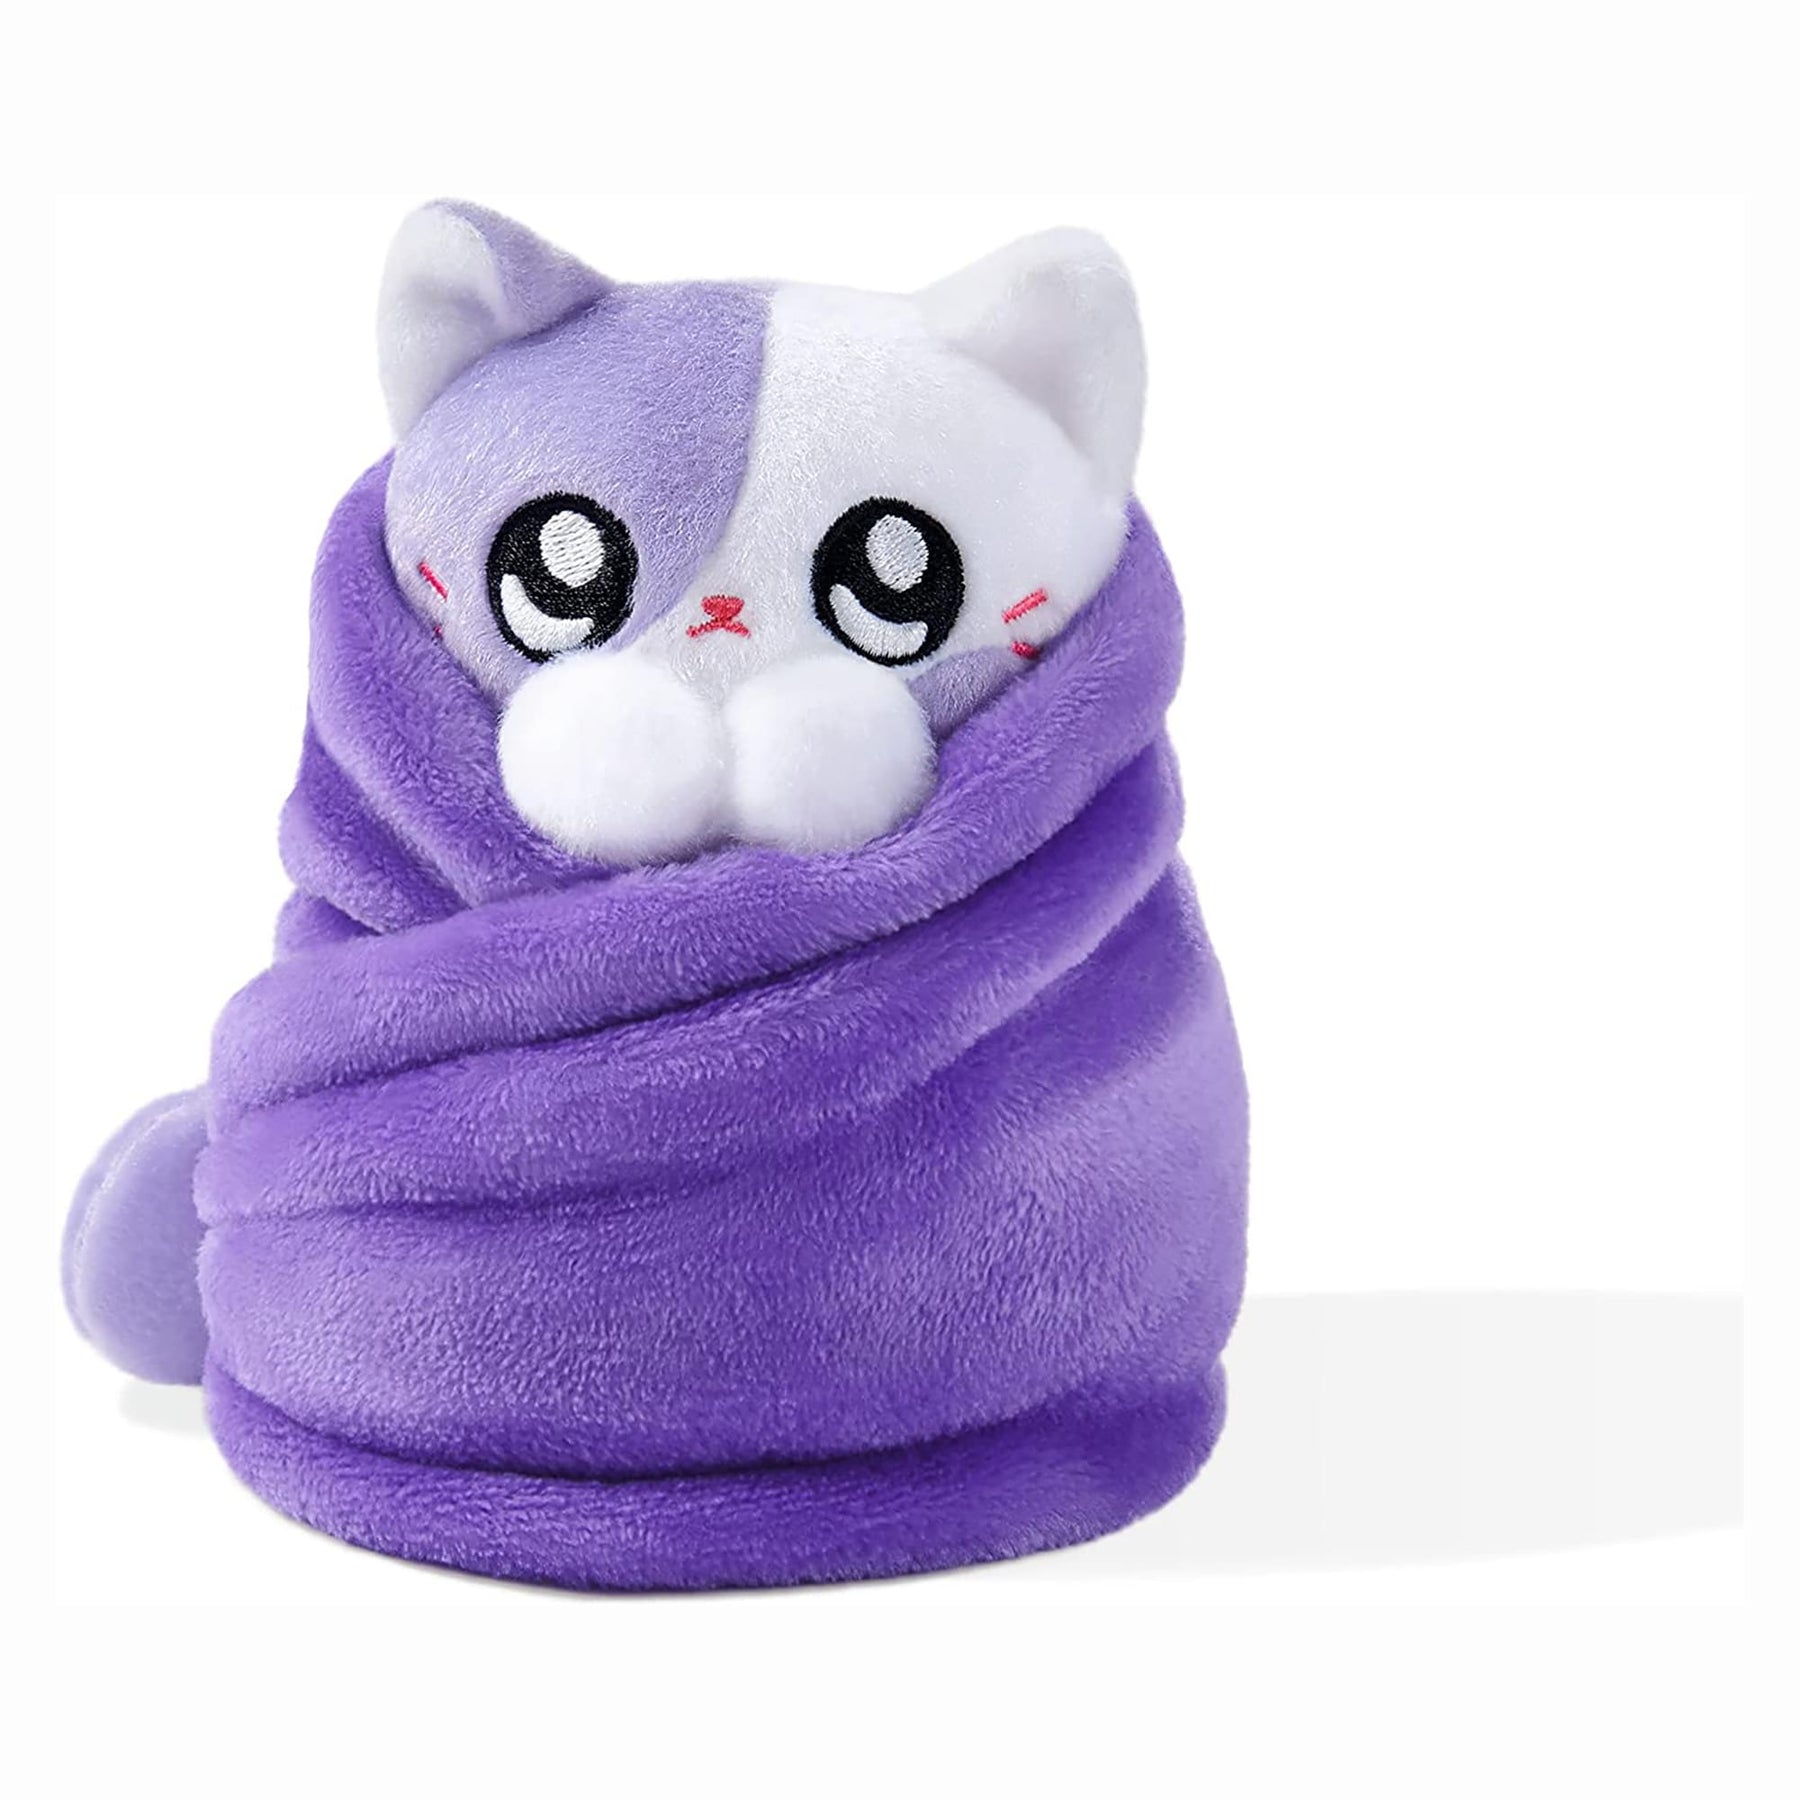 Purritos 7 Inch Plush Cat in Blanket | Boba Tea